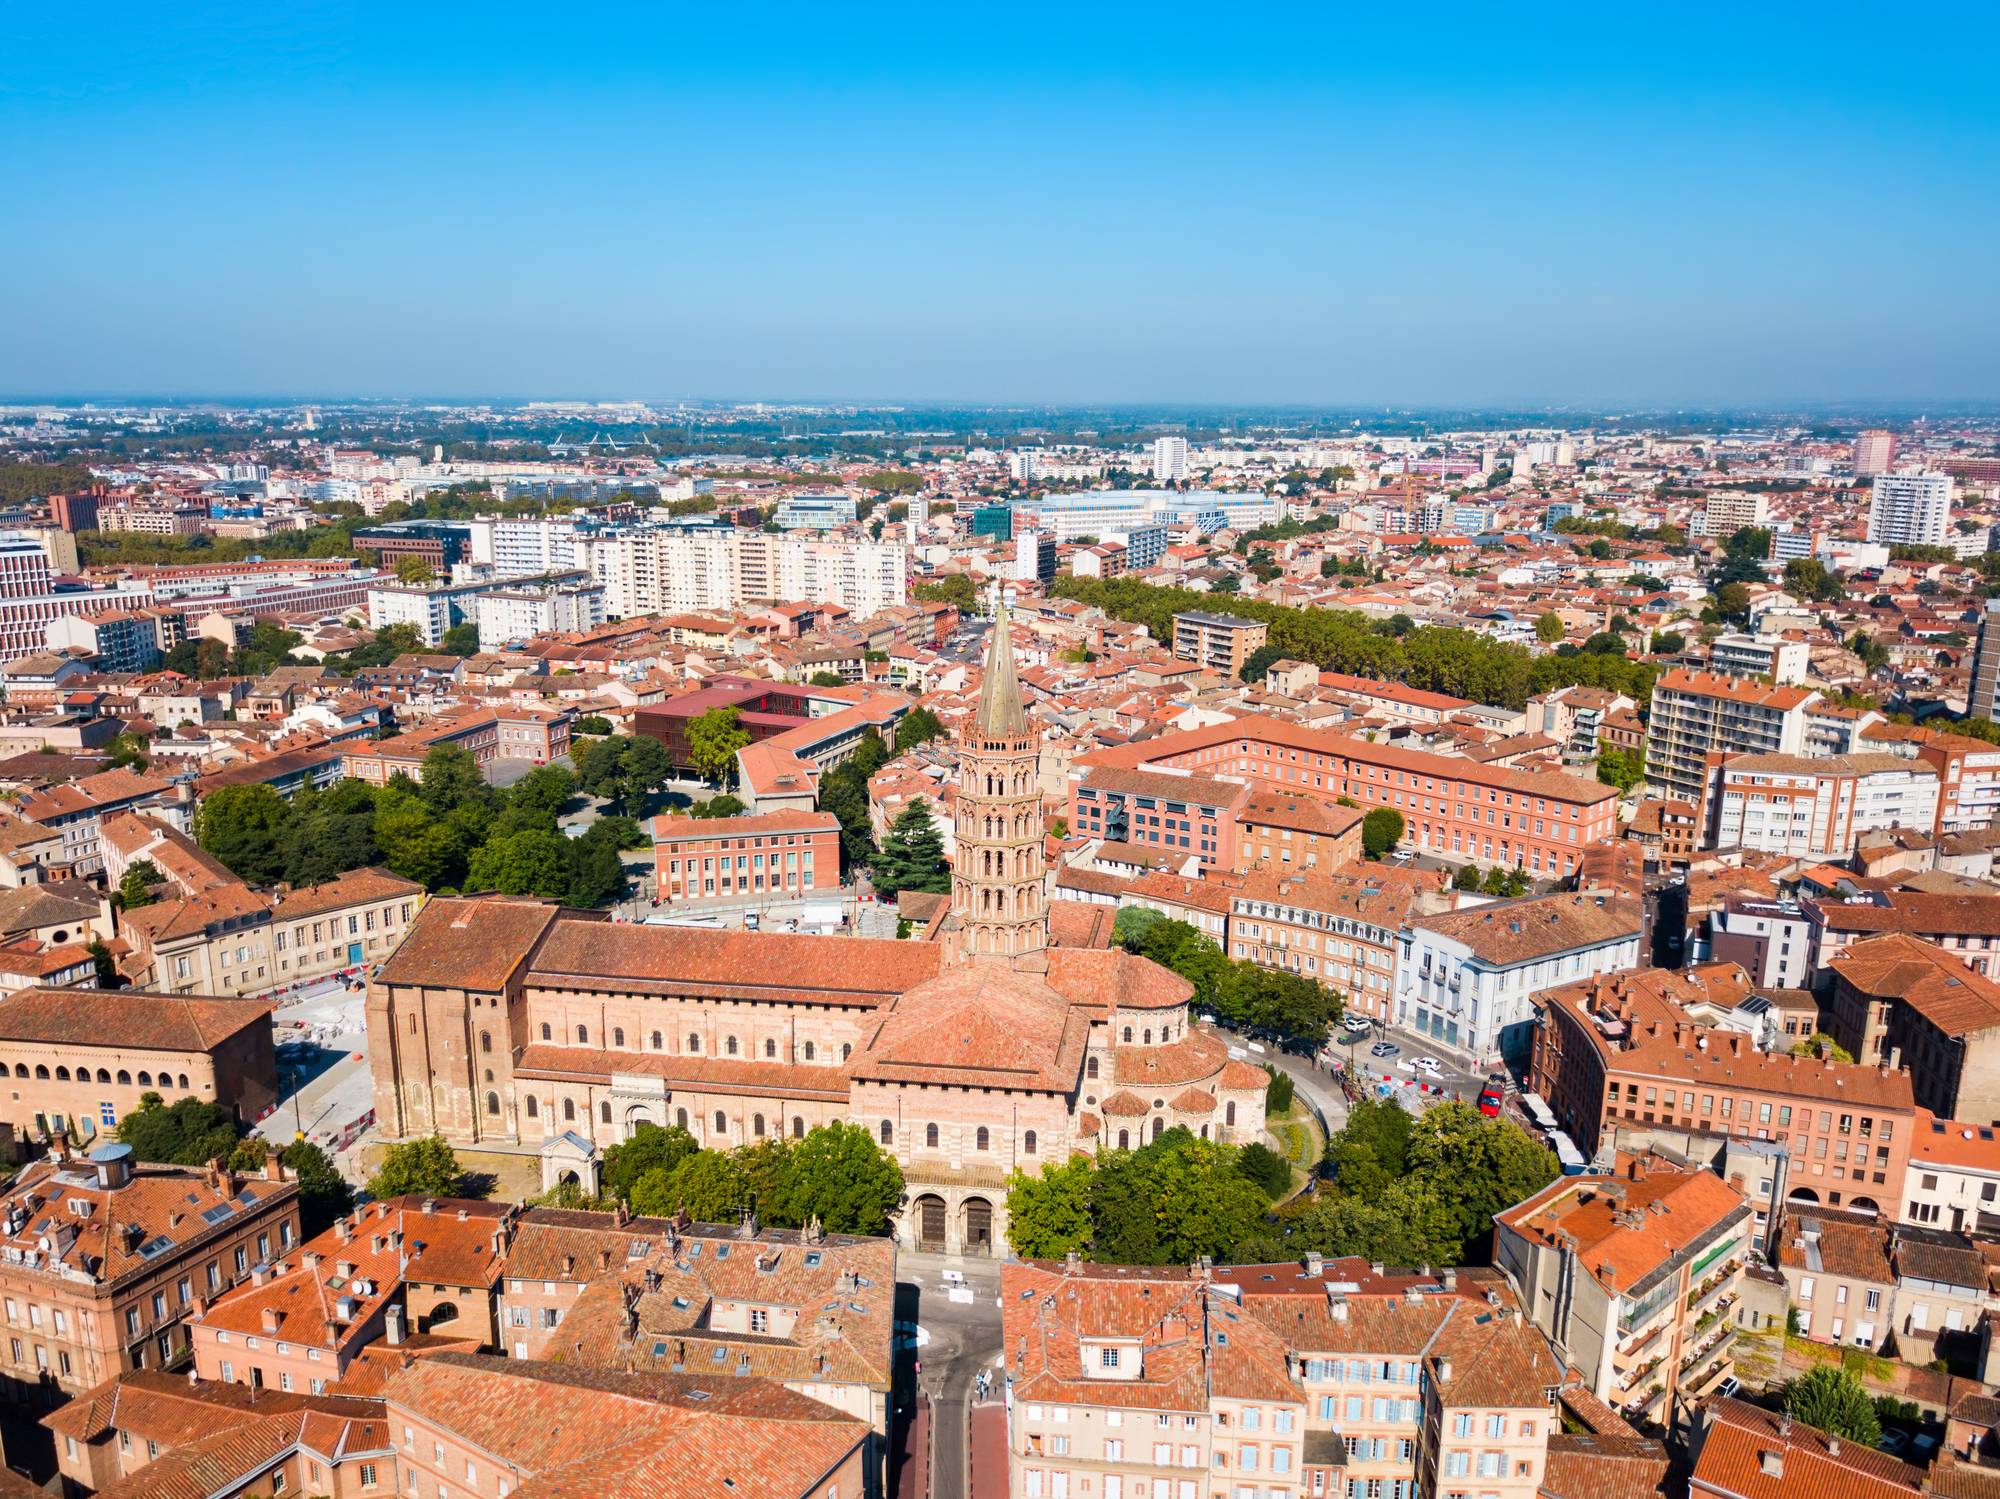 Immobilier neuf : pourquoi choisir d'investir à Toulouse ?